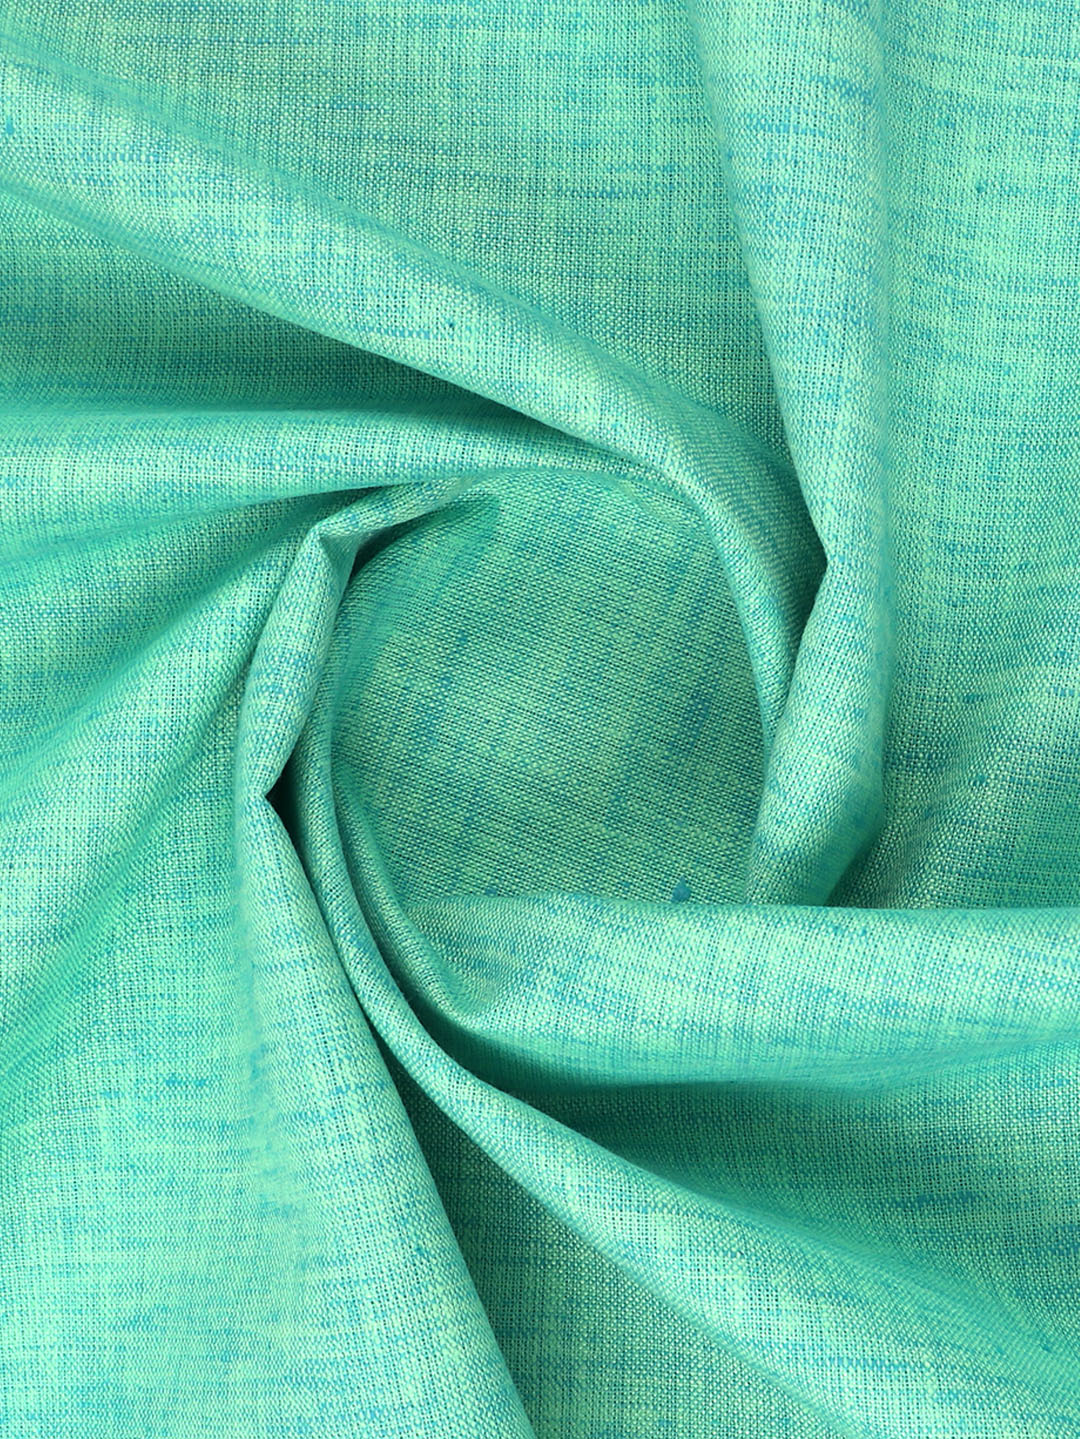 Cotton Blend Dark Green Colour Kurtha Fabric Lampus - APC1106-29